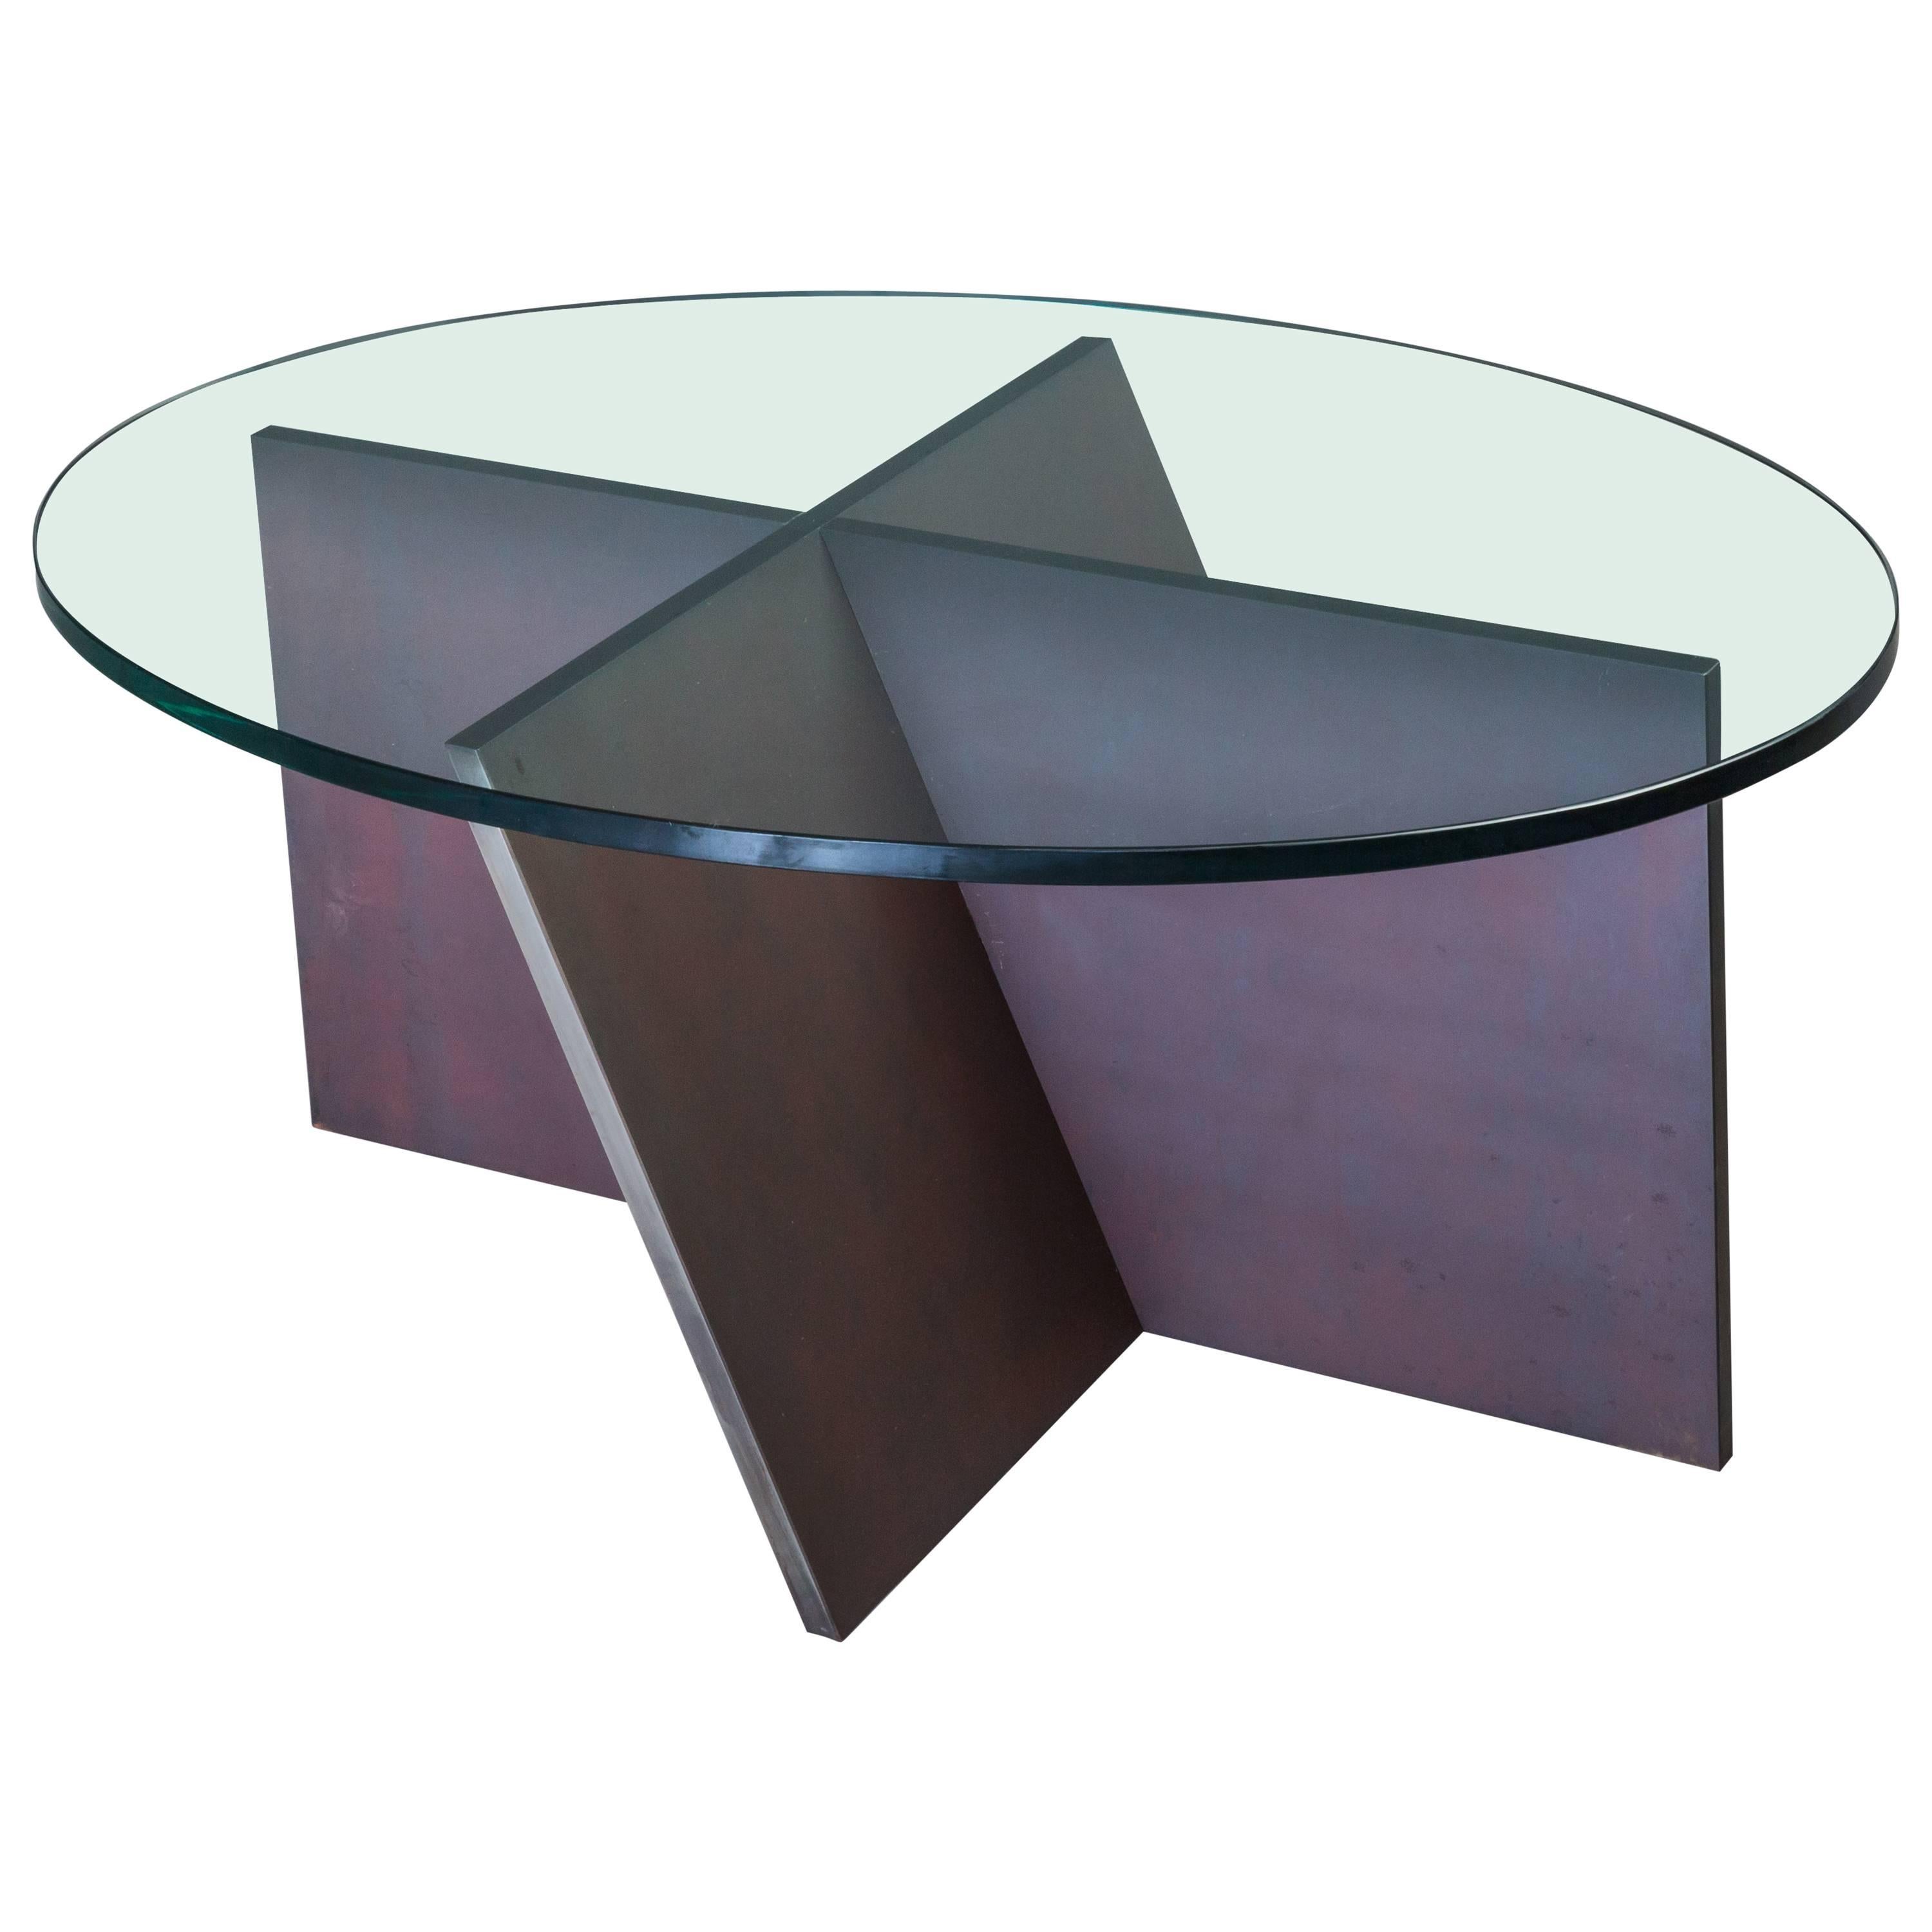 Table basse ovale sculpturale minimaliste unique en son genre en acier et verre 